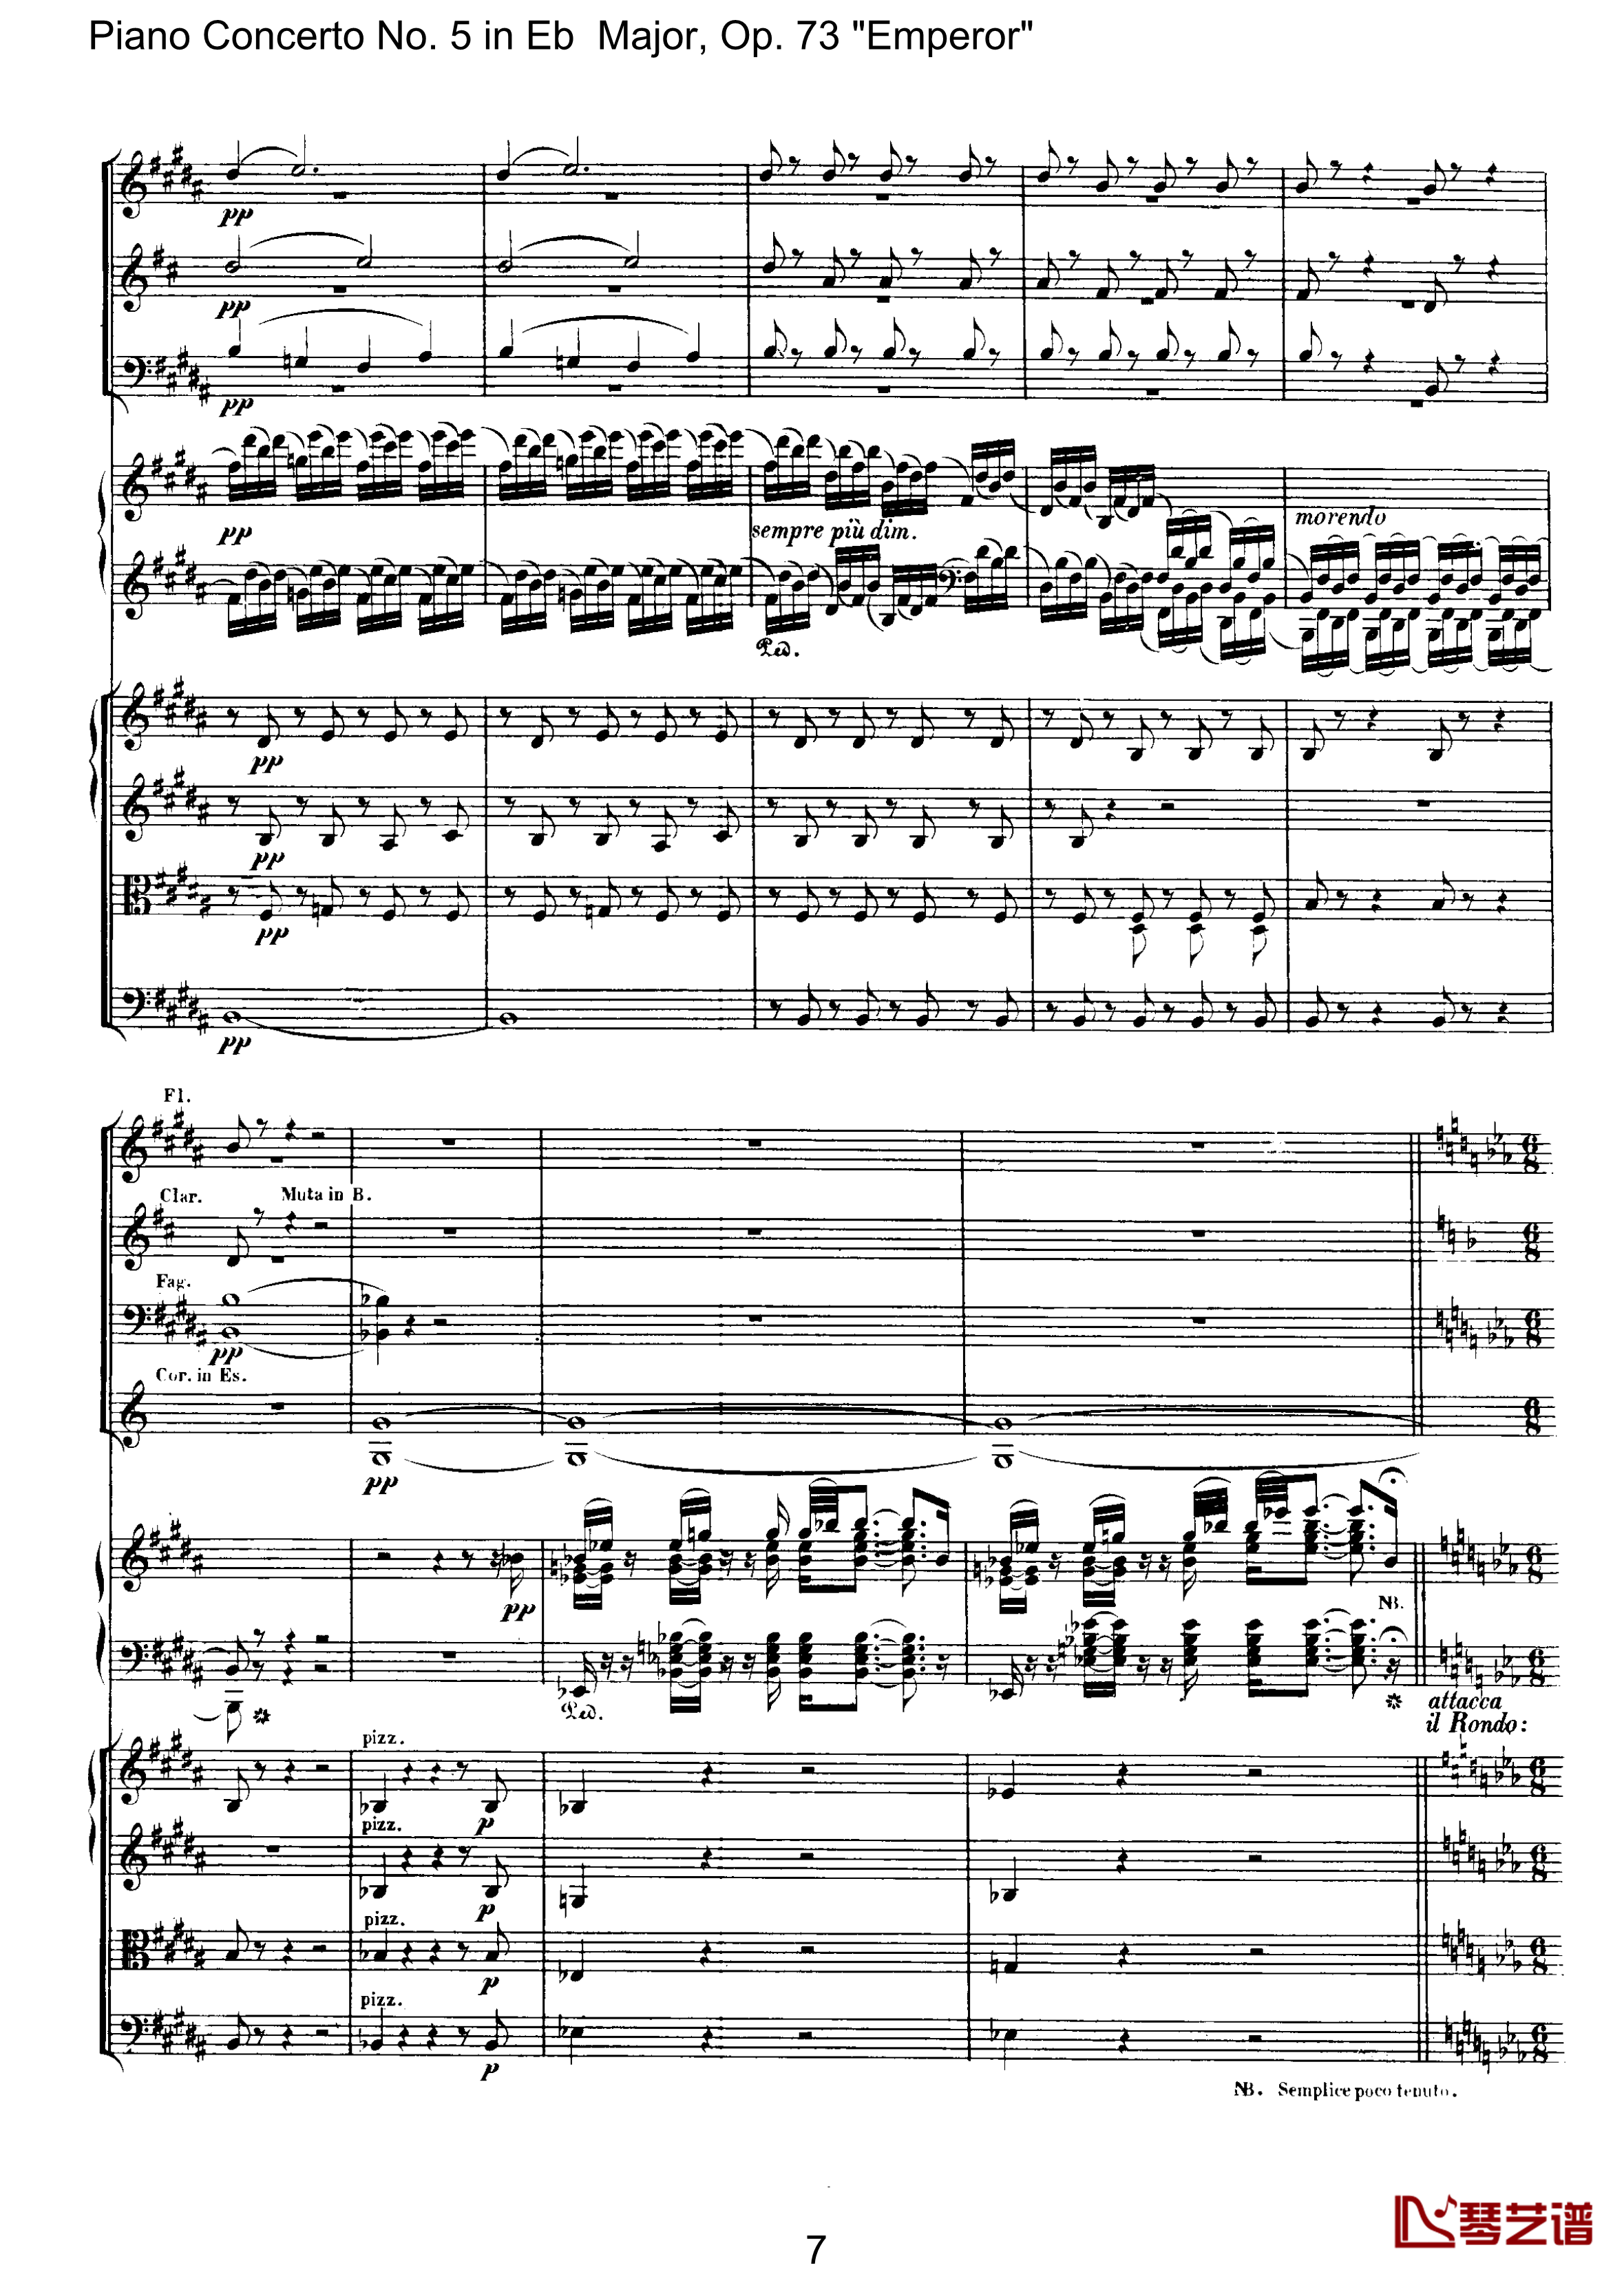 皇帝第二乐章钢琴谱-贝多芬-总谱-第五钢琴协奏曲beethoven7